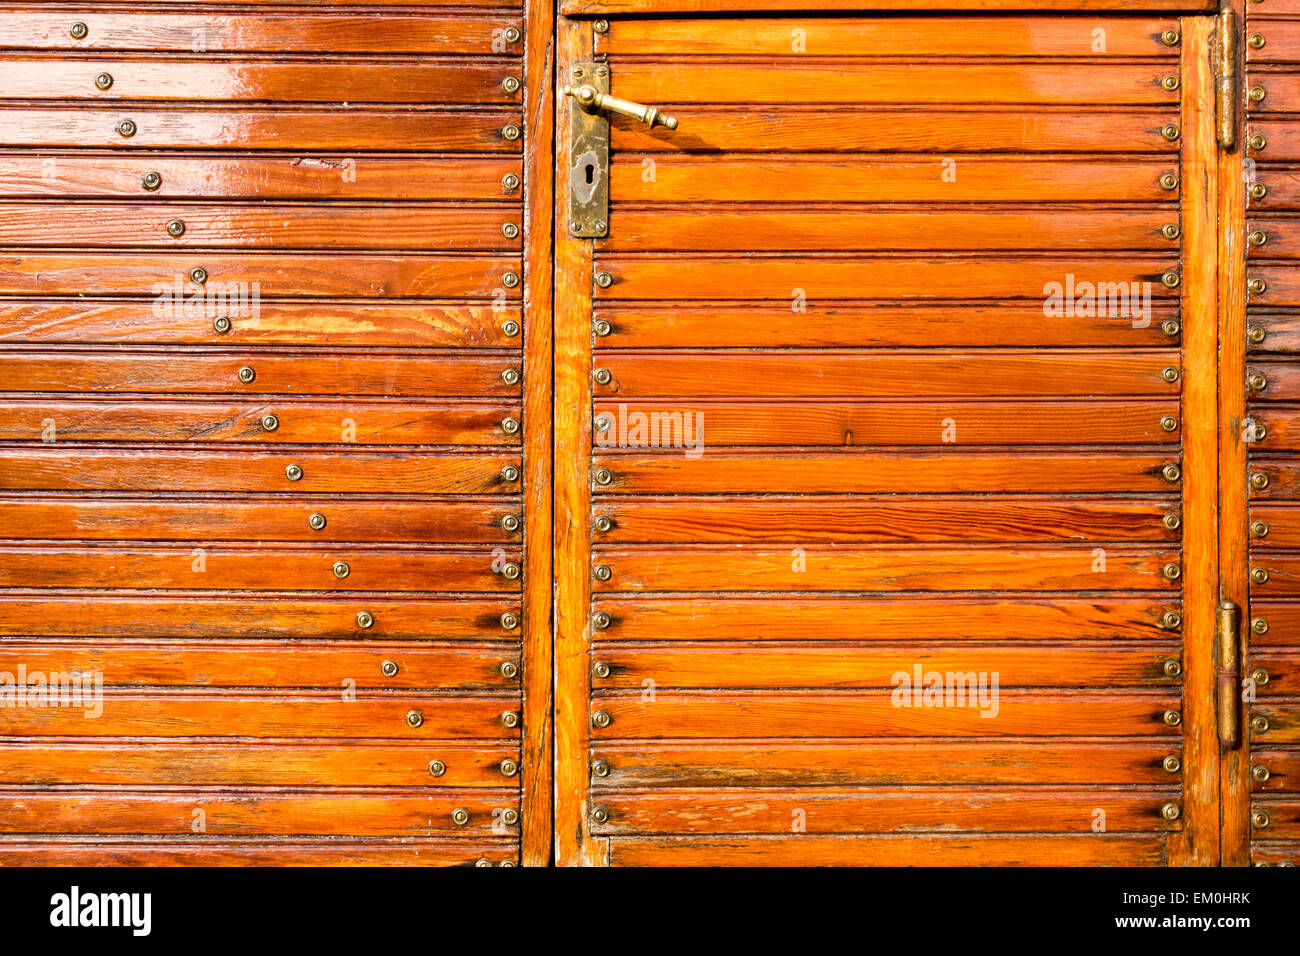 DEU/Deutschland, BAB 8, Türe an einem alten Schaustellerwagen Holzlattenstruktur, Schrauben, Beschläge    [© 2014 Christoph Herm Stock Photo